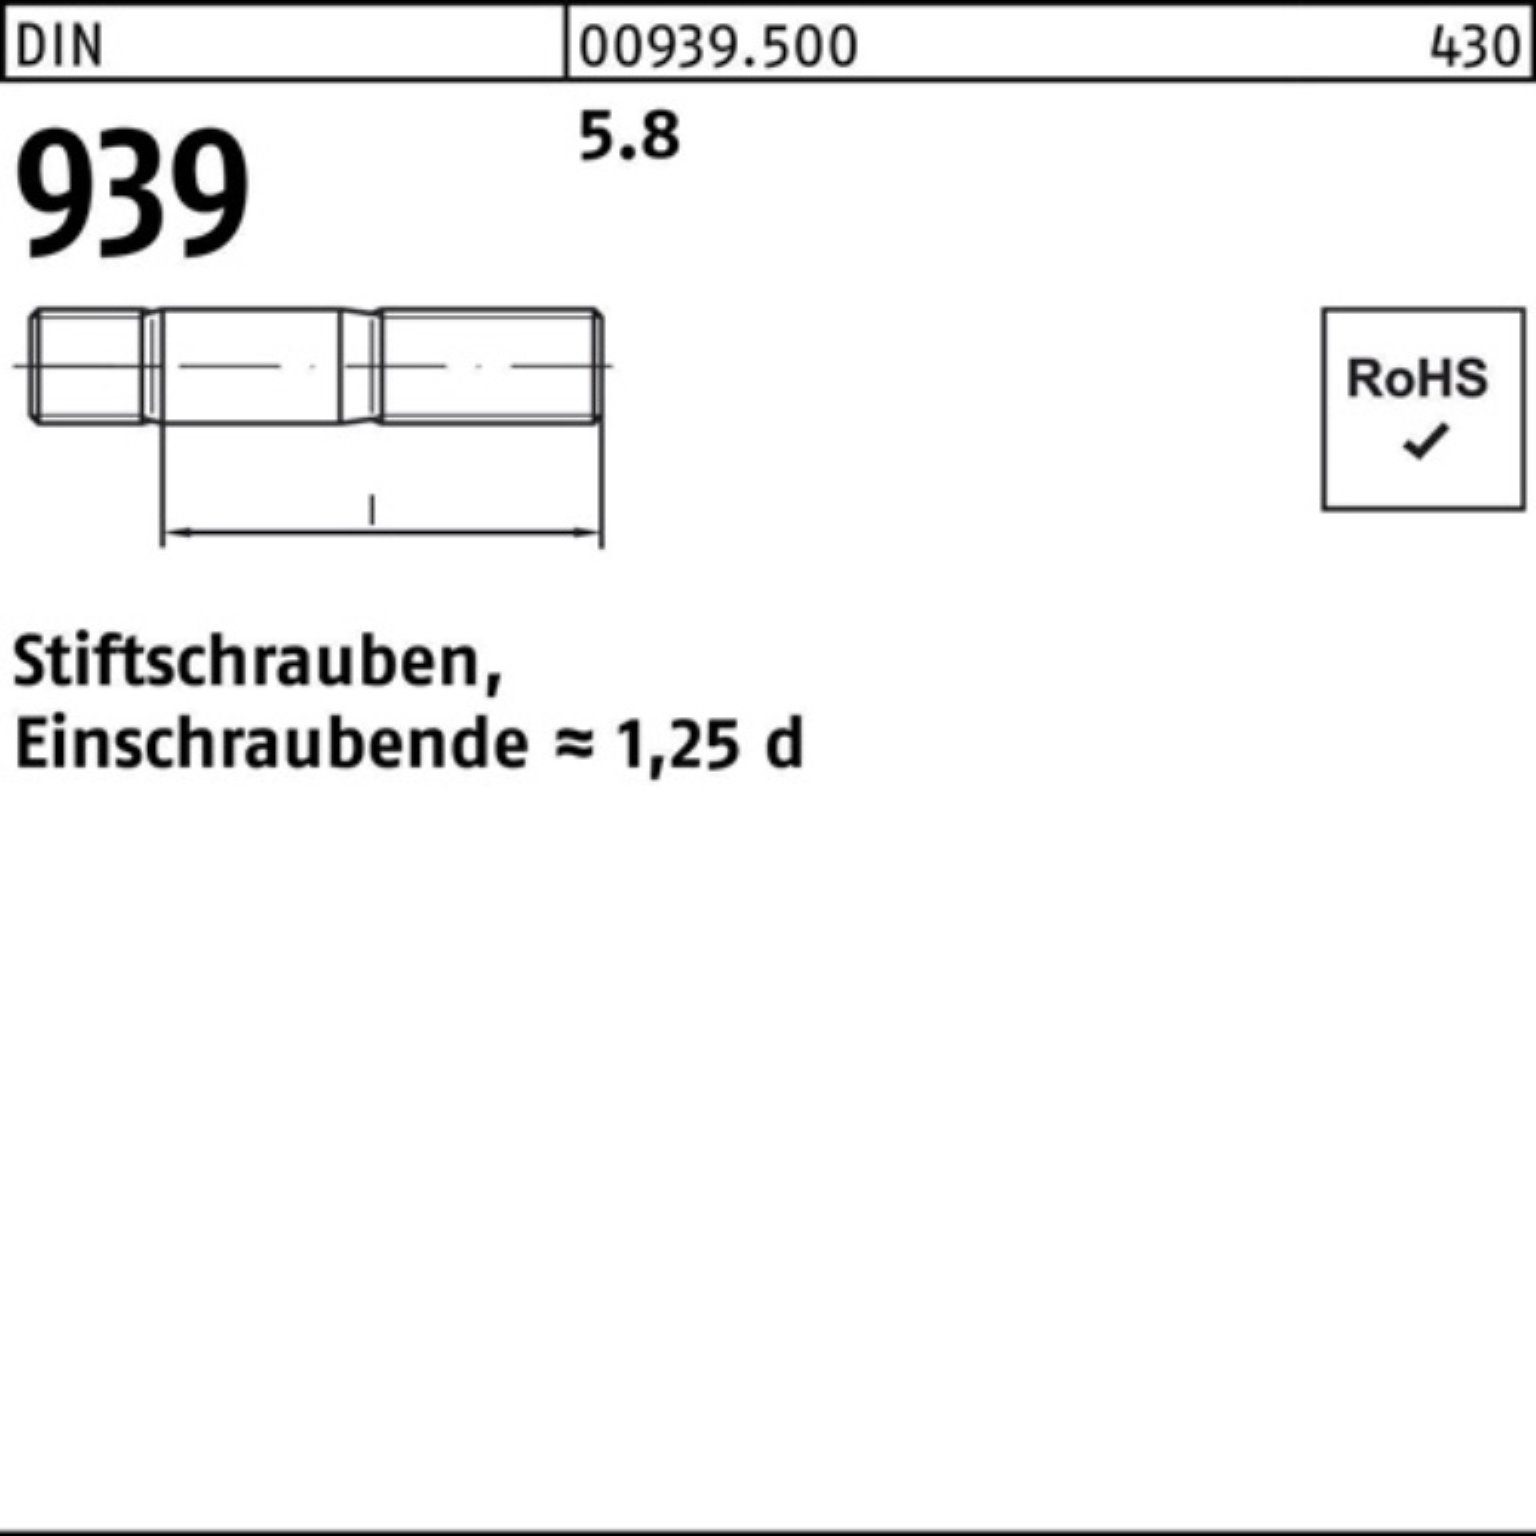 M10x 5.8 Stiftschraube Reyher DIN Einschraubende=1,25d 50 80 Pack S Stiftschraube 100er 939